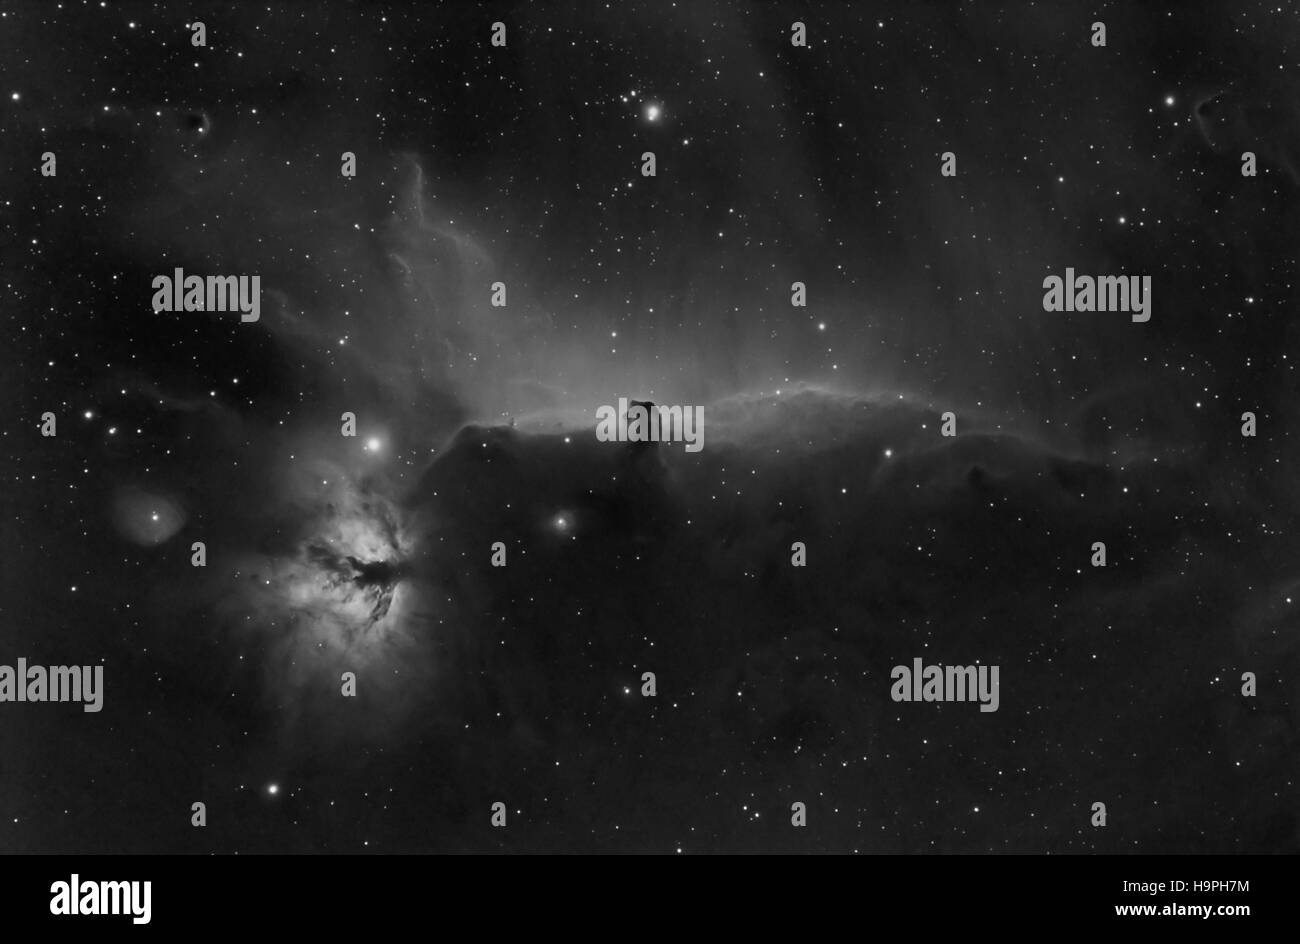 Pferdekopf und Flamme Nebel in Orion Konstellation, schwarz / weiß Foto der Pferdekopf-Nebel - mit speziellen Kamera aufgenommen Stockfoto